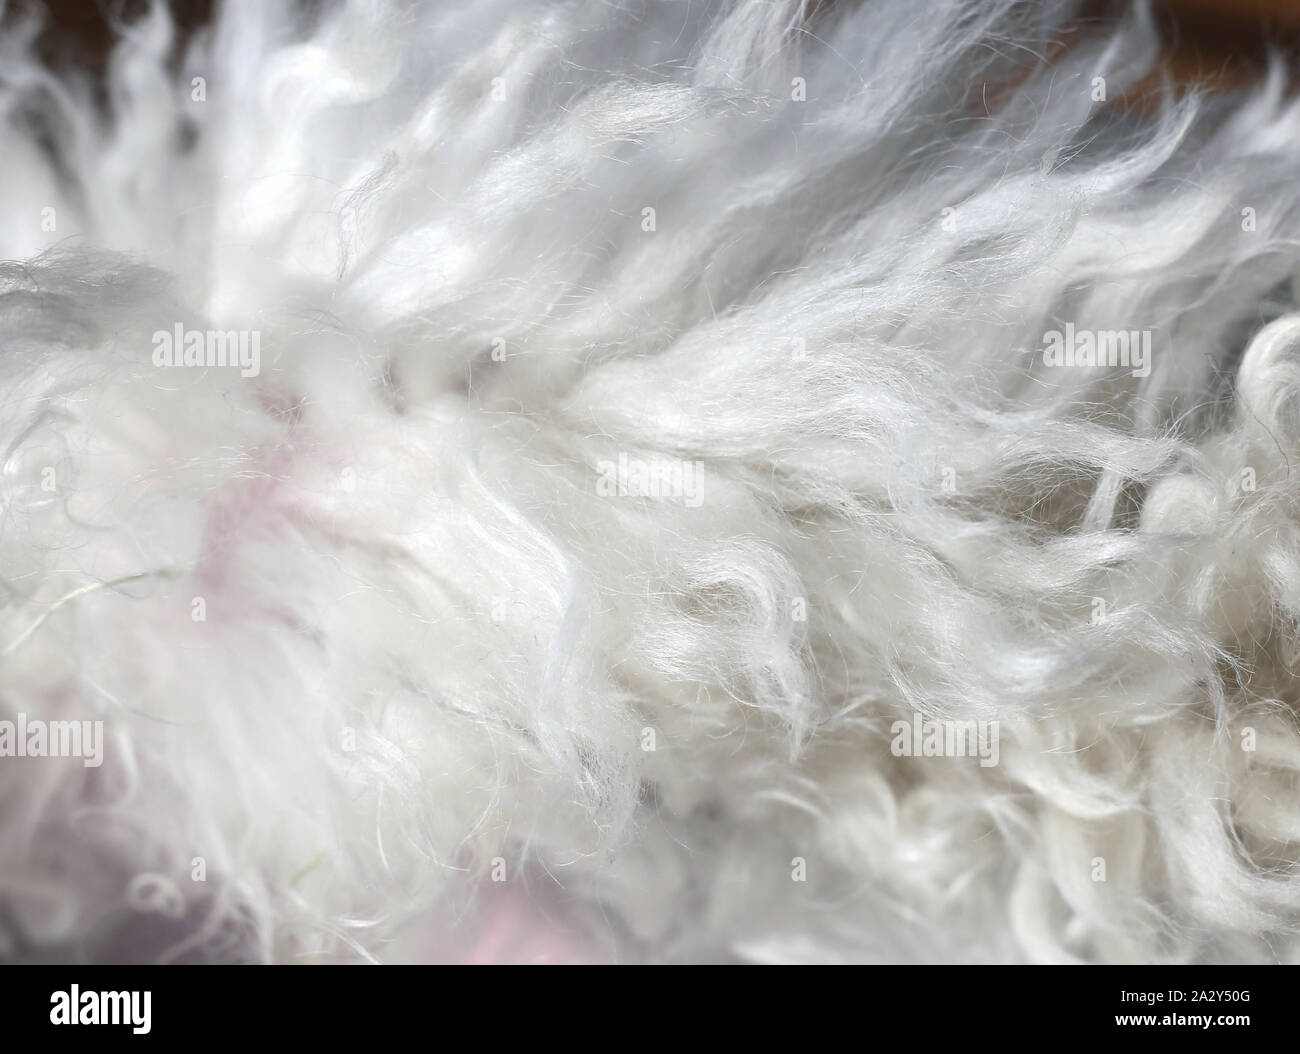 Detailansicht der Pelz der weißen Pudel. Das Fell ist immer noch zu den Pudel befestigt. Schönes anderes nehmen an unsere geliebten Haustiere. Canine Haar in Makro Bild. Stockfoto